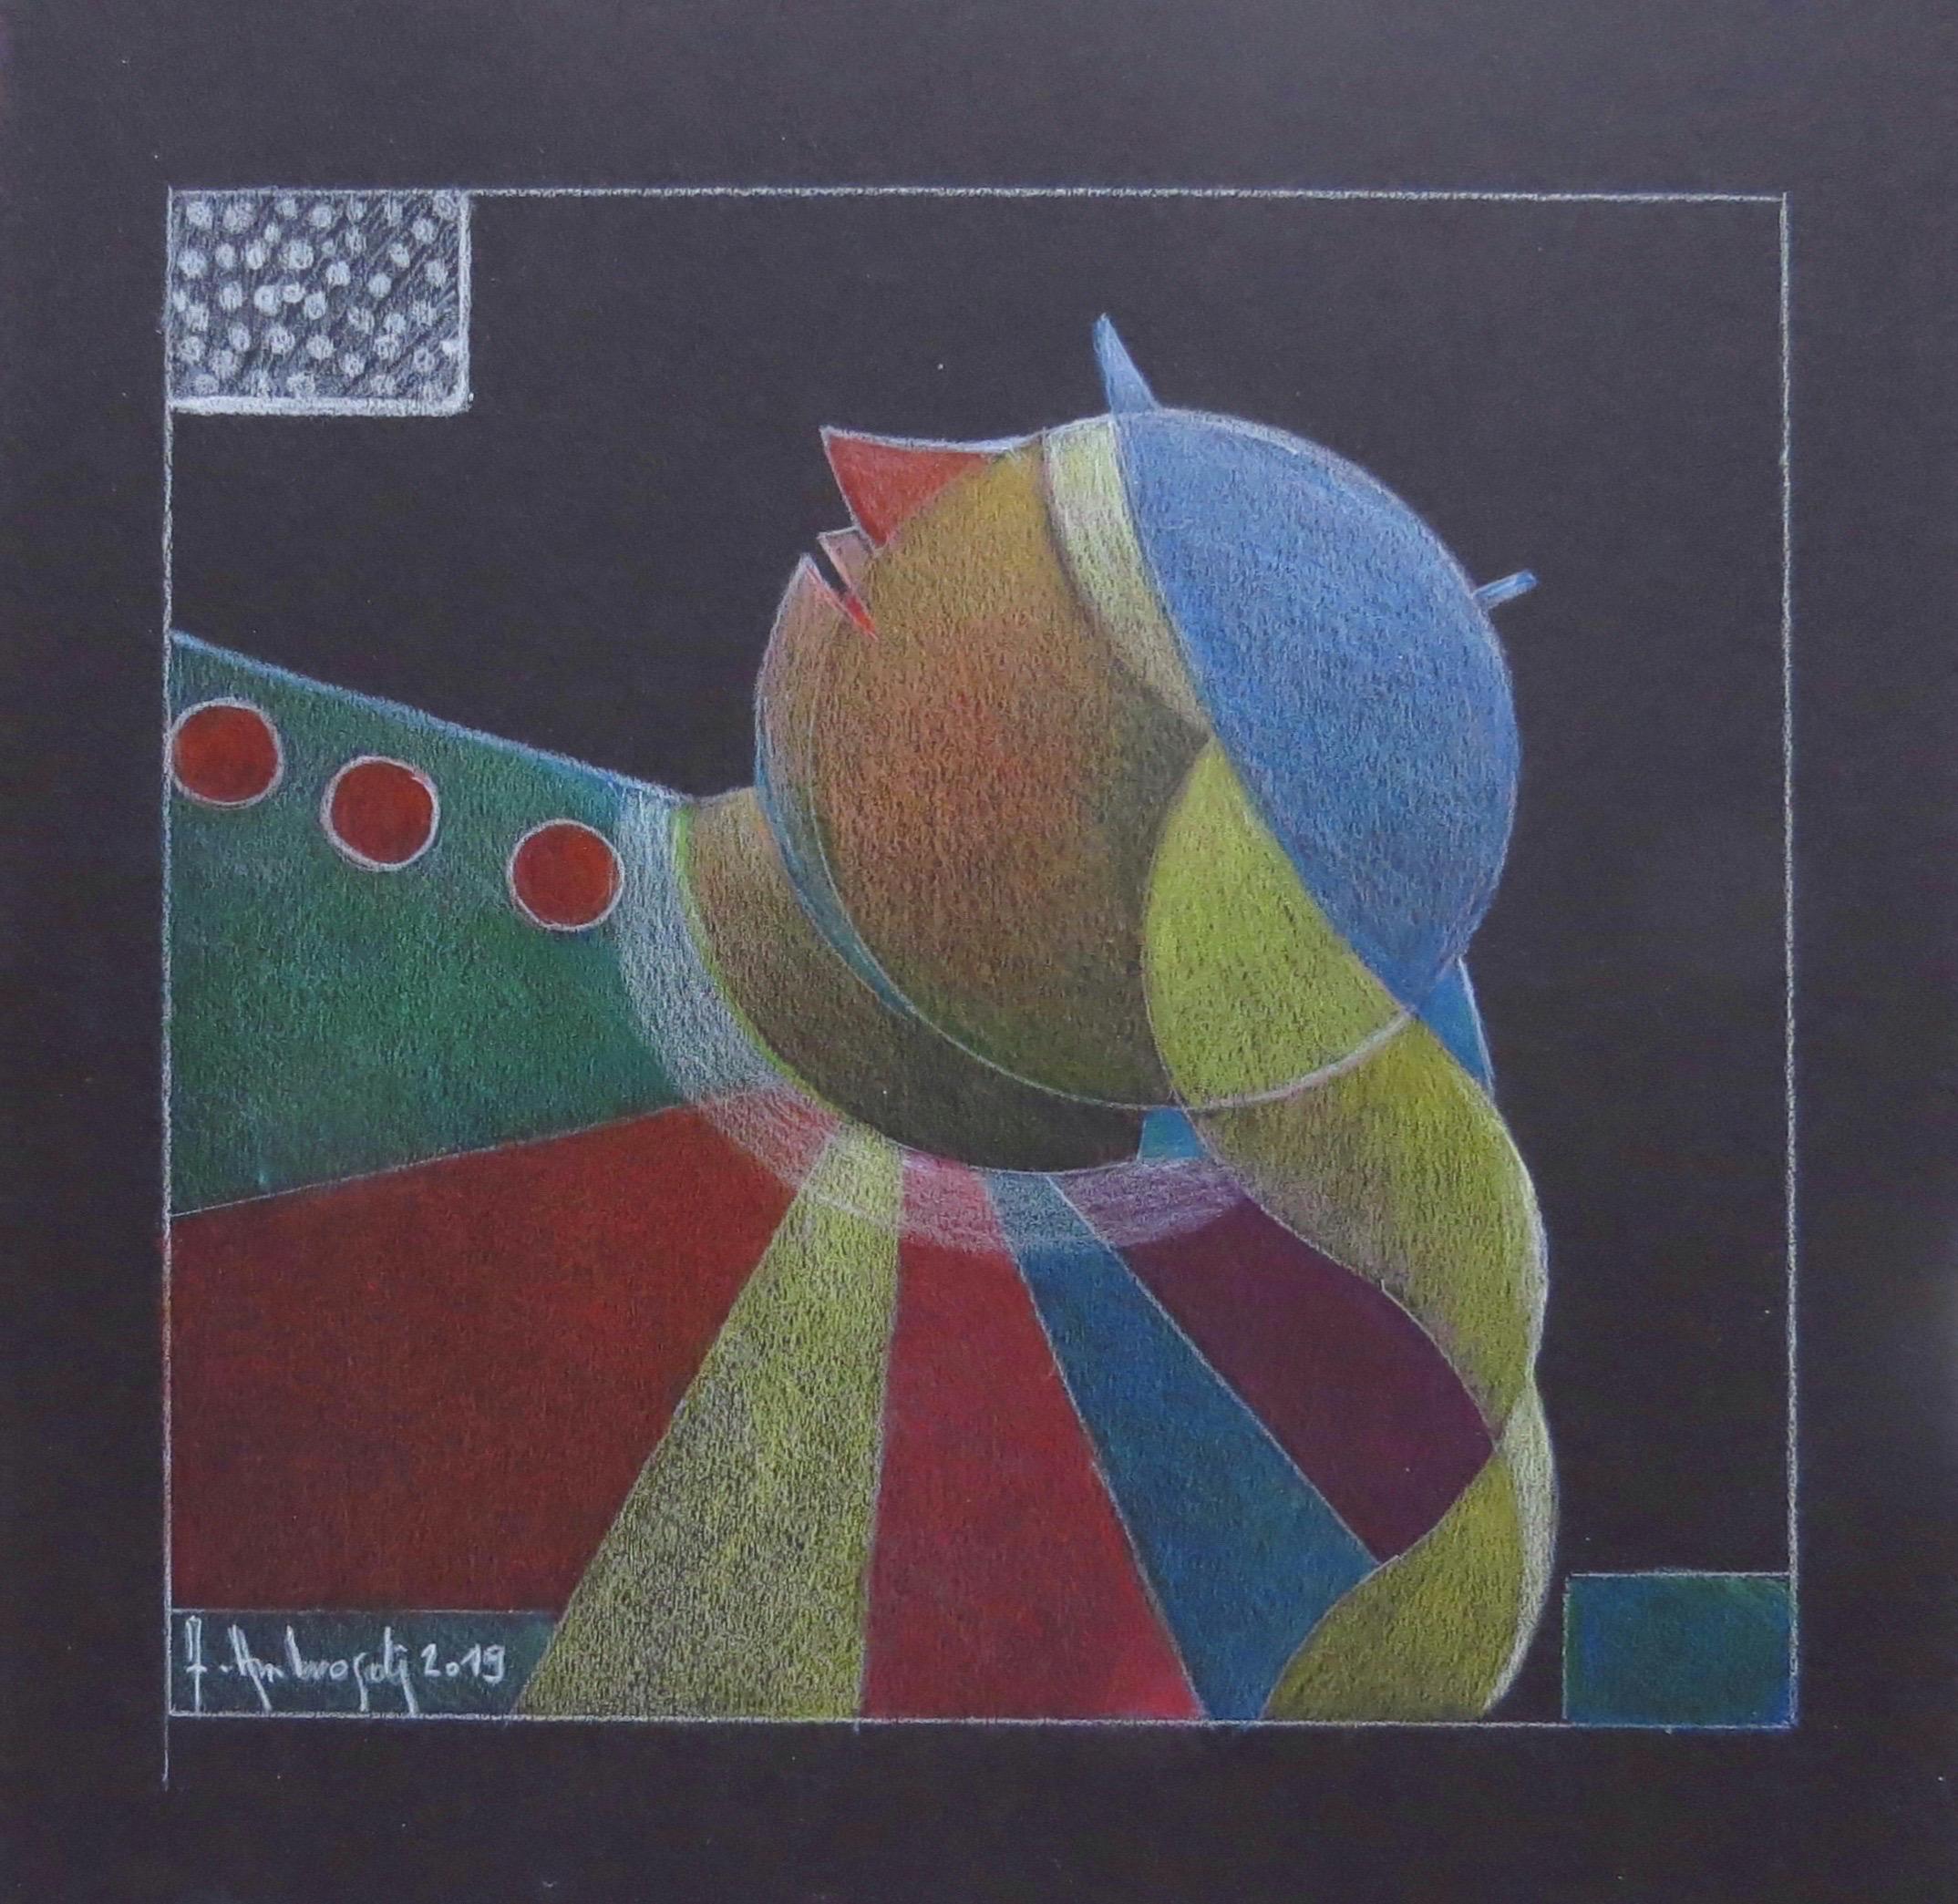 Rainbow (2019) 21x22 cm, von der italienischen Künstlerin Annemarie Ambrosoli, ist eine farbige  Bleistiftzeichnung  gerahmt mit einem schwarzen Passepartout, das 29x27 cm misst
©Annemarie Ambrosoli

Dieses Werk ist ein Unikat. Es ist